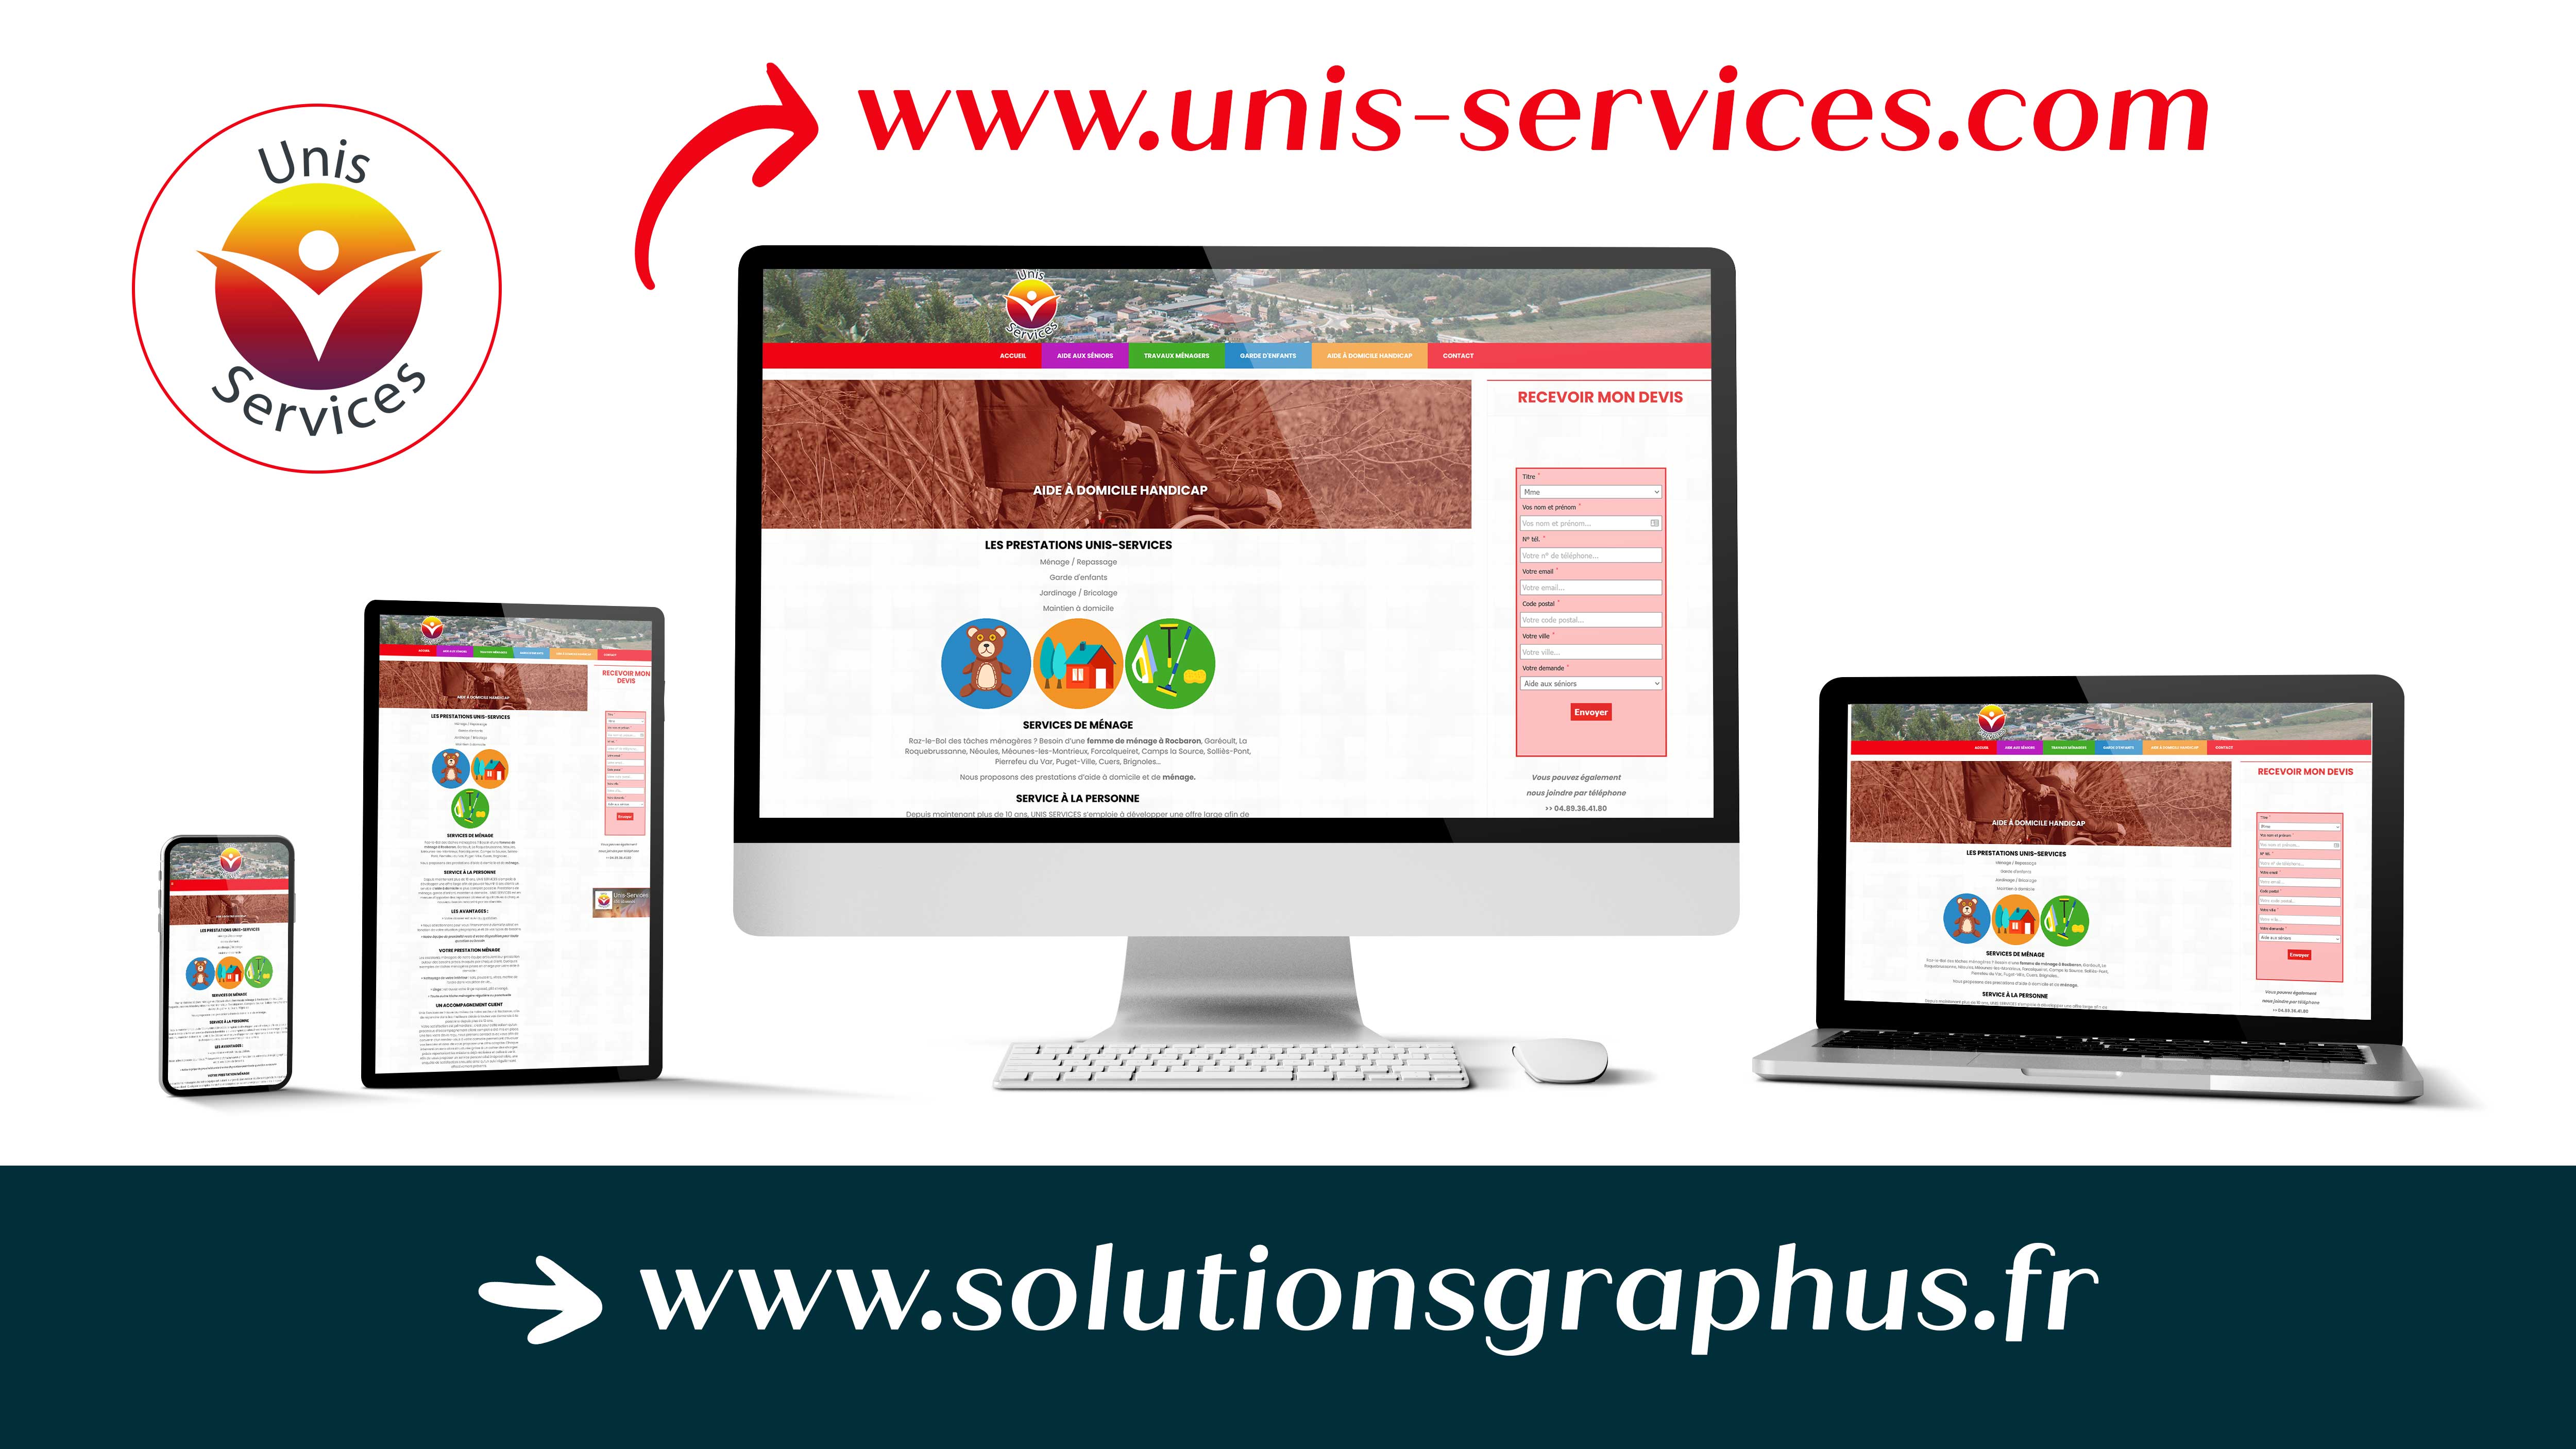 Réalisation du site vitrine Unis-Services.com par Solutions Graph'us, agence web, création de sites et de logos  à Brignoles (83)